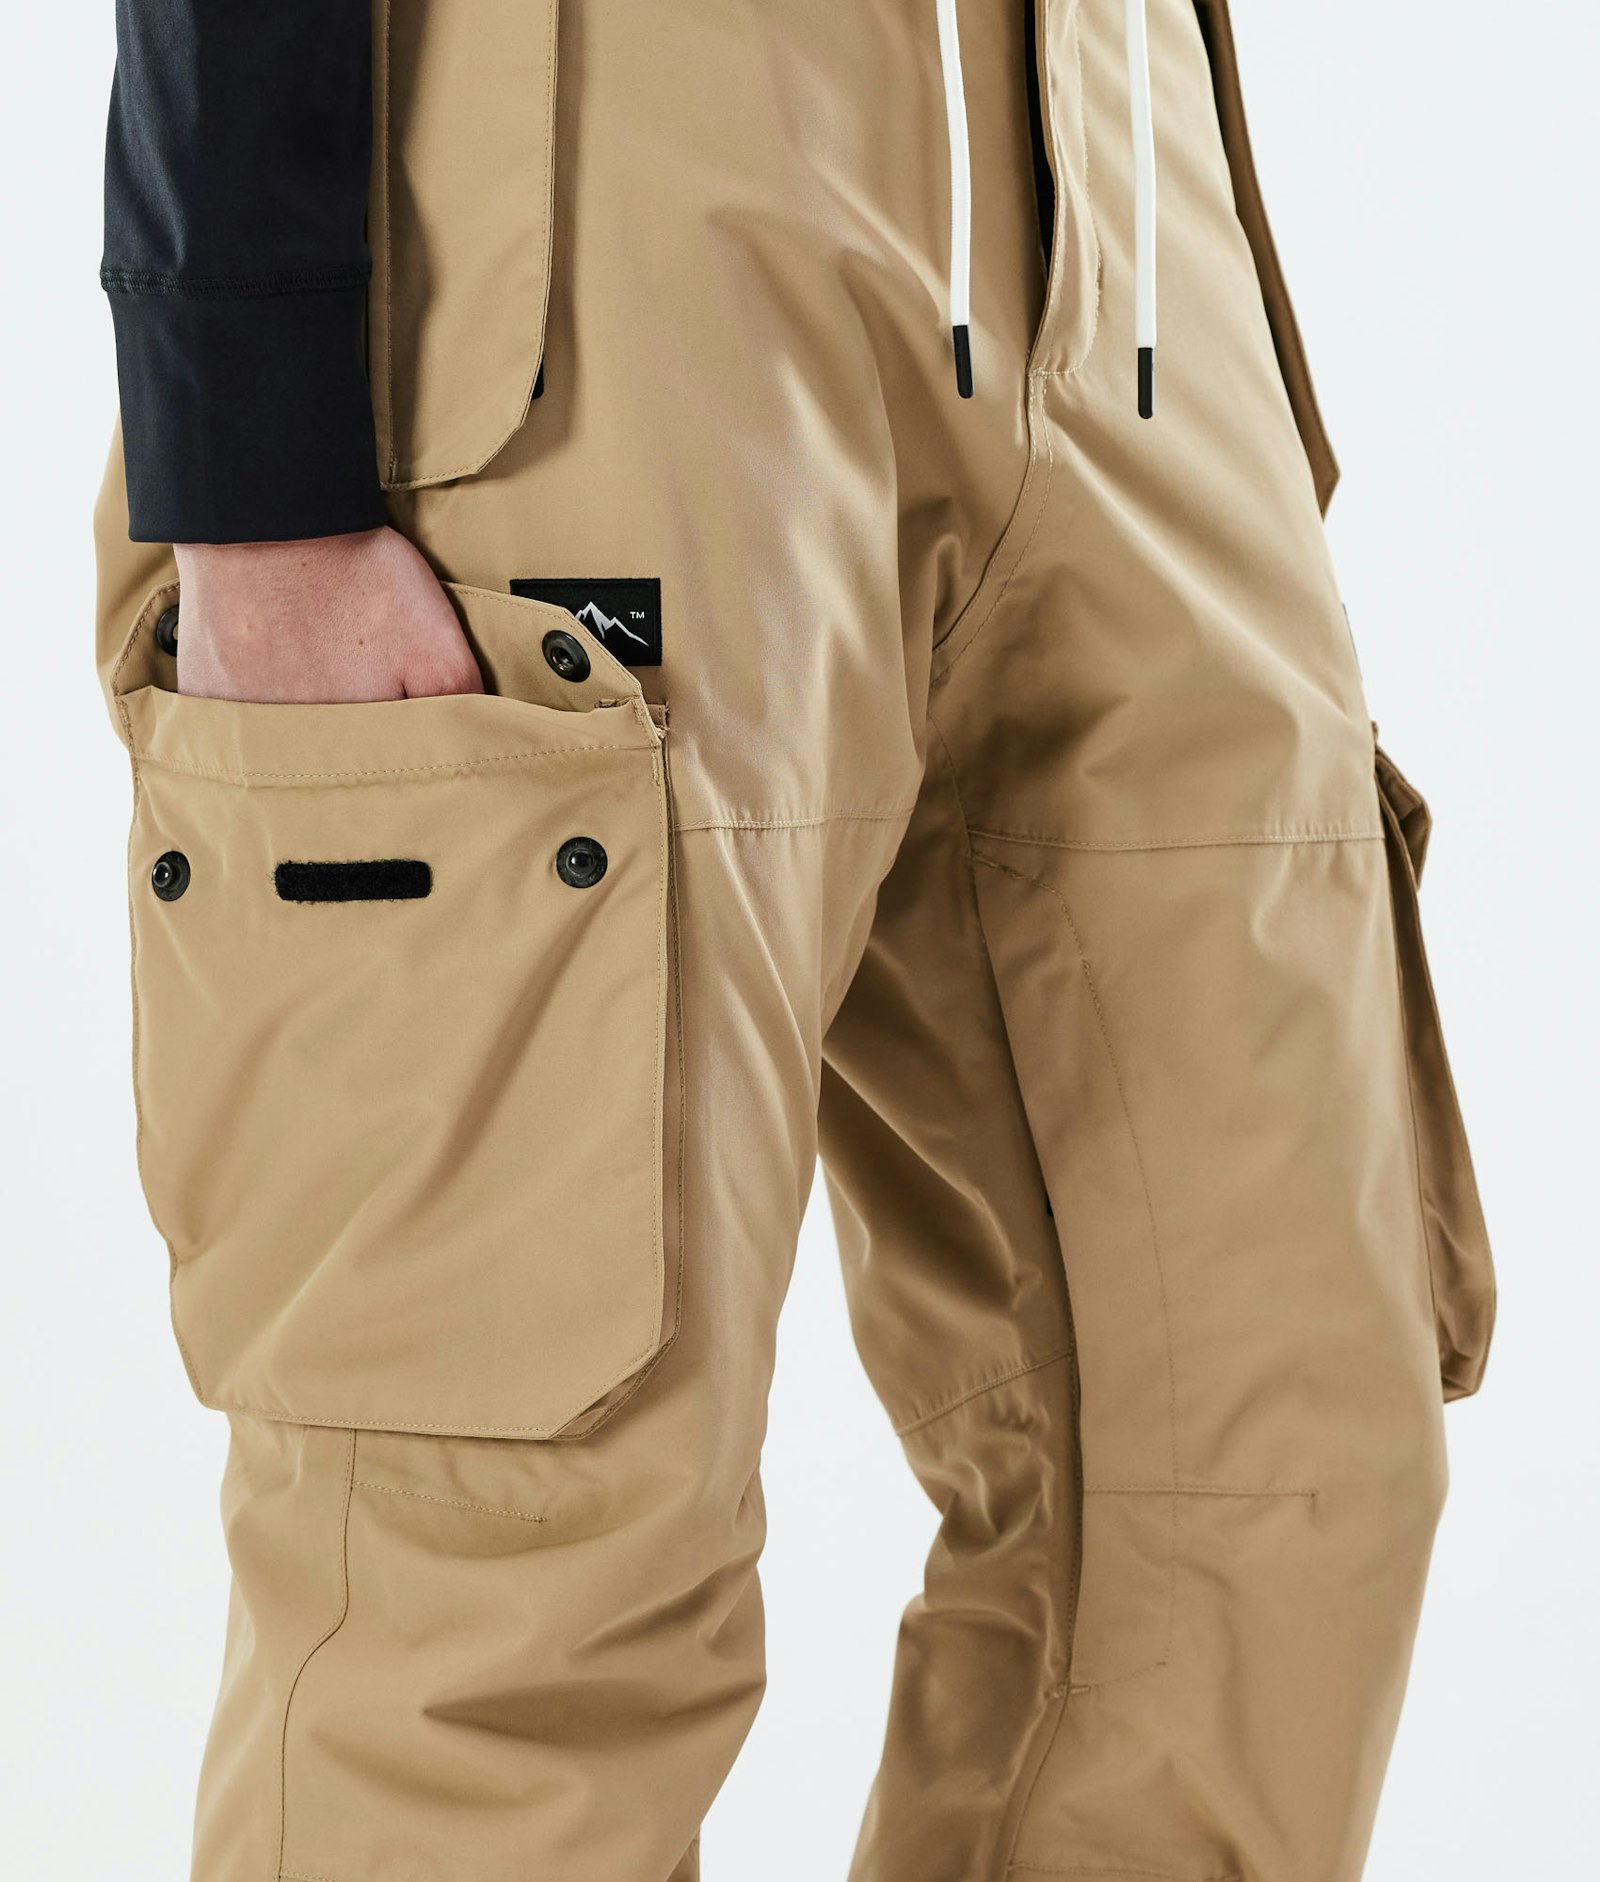 Iconic W 2021 Kalhoty na Snowboard Dámské Khaki Renewed